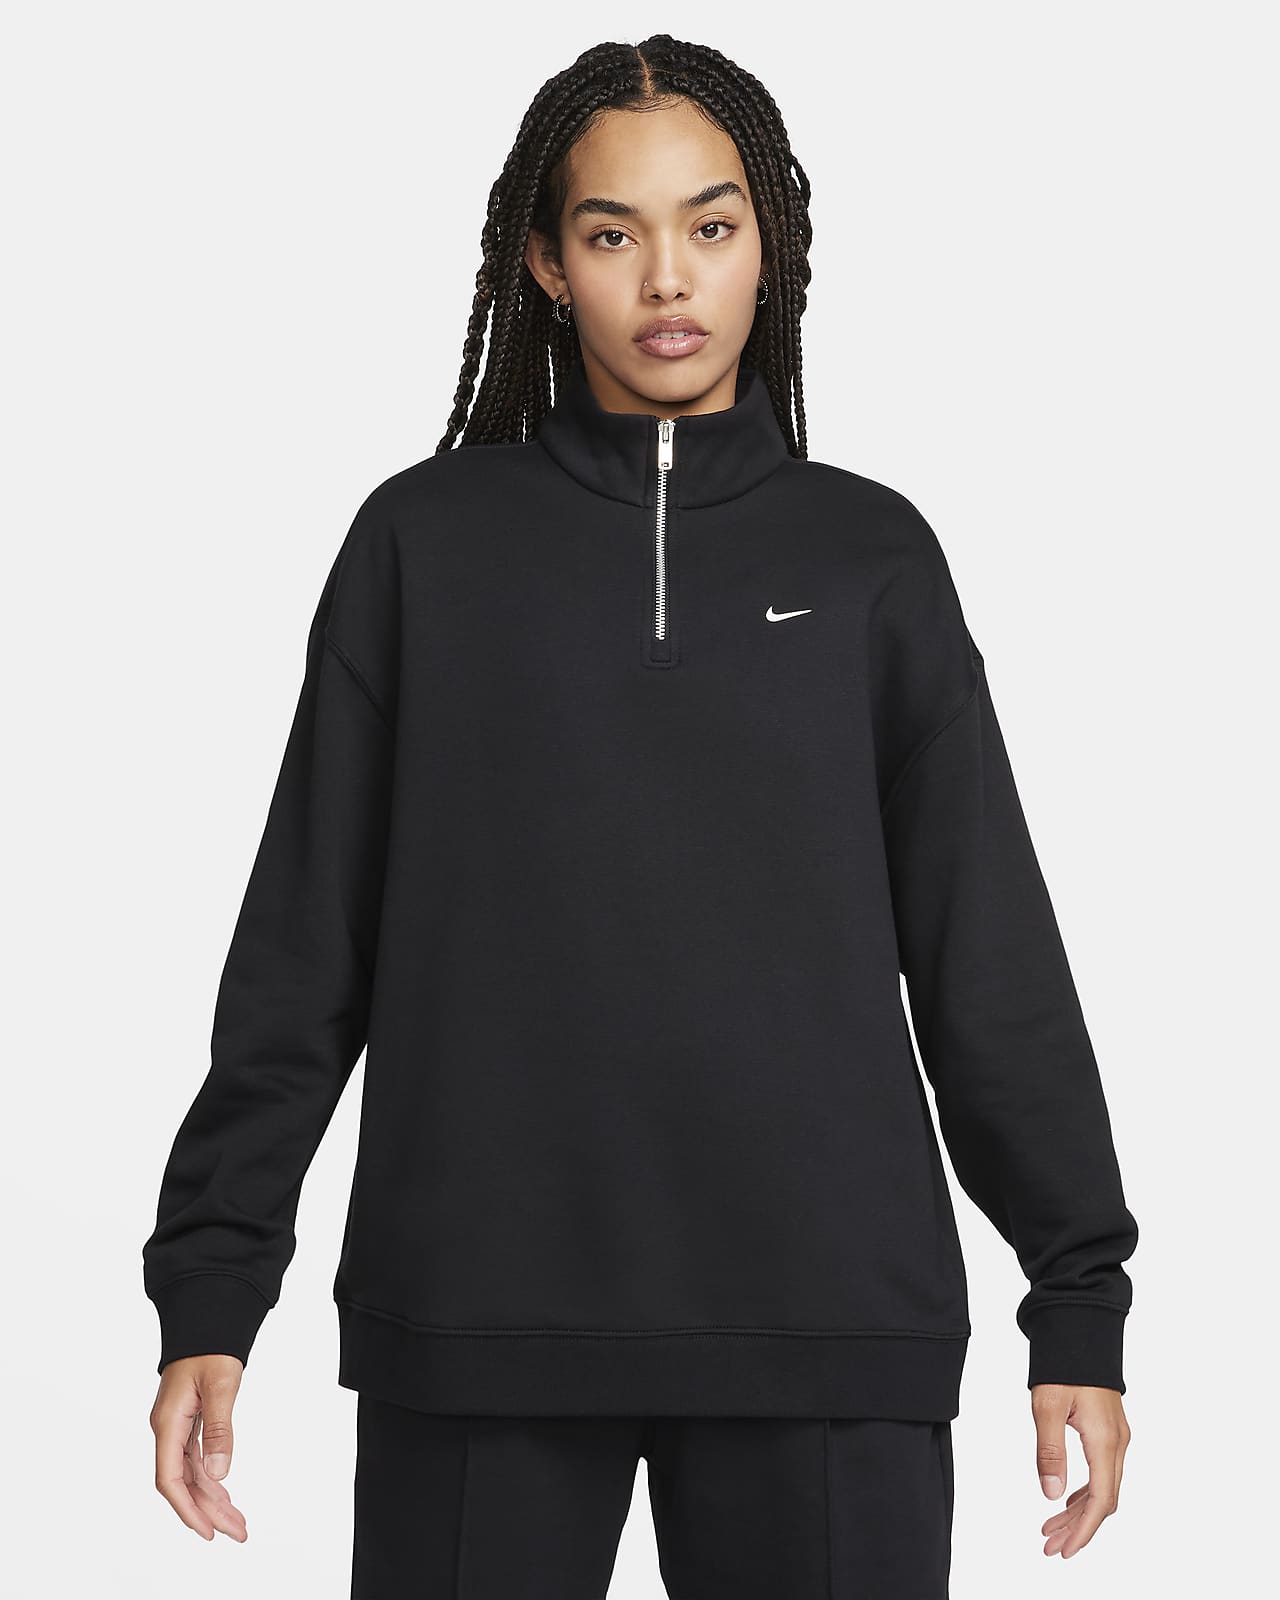 Γυναικεία φλις μπλούζα σε φαρδιά γραμμή με φερμουάρ στο 1/4 του μήκους Nike Sportswear